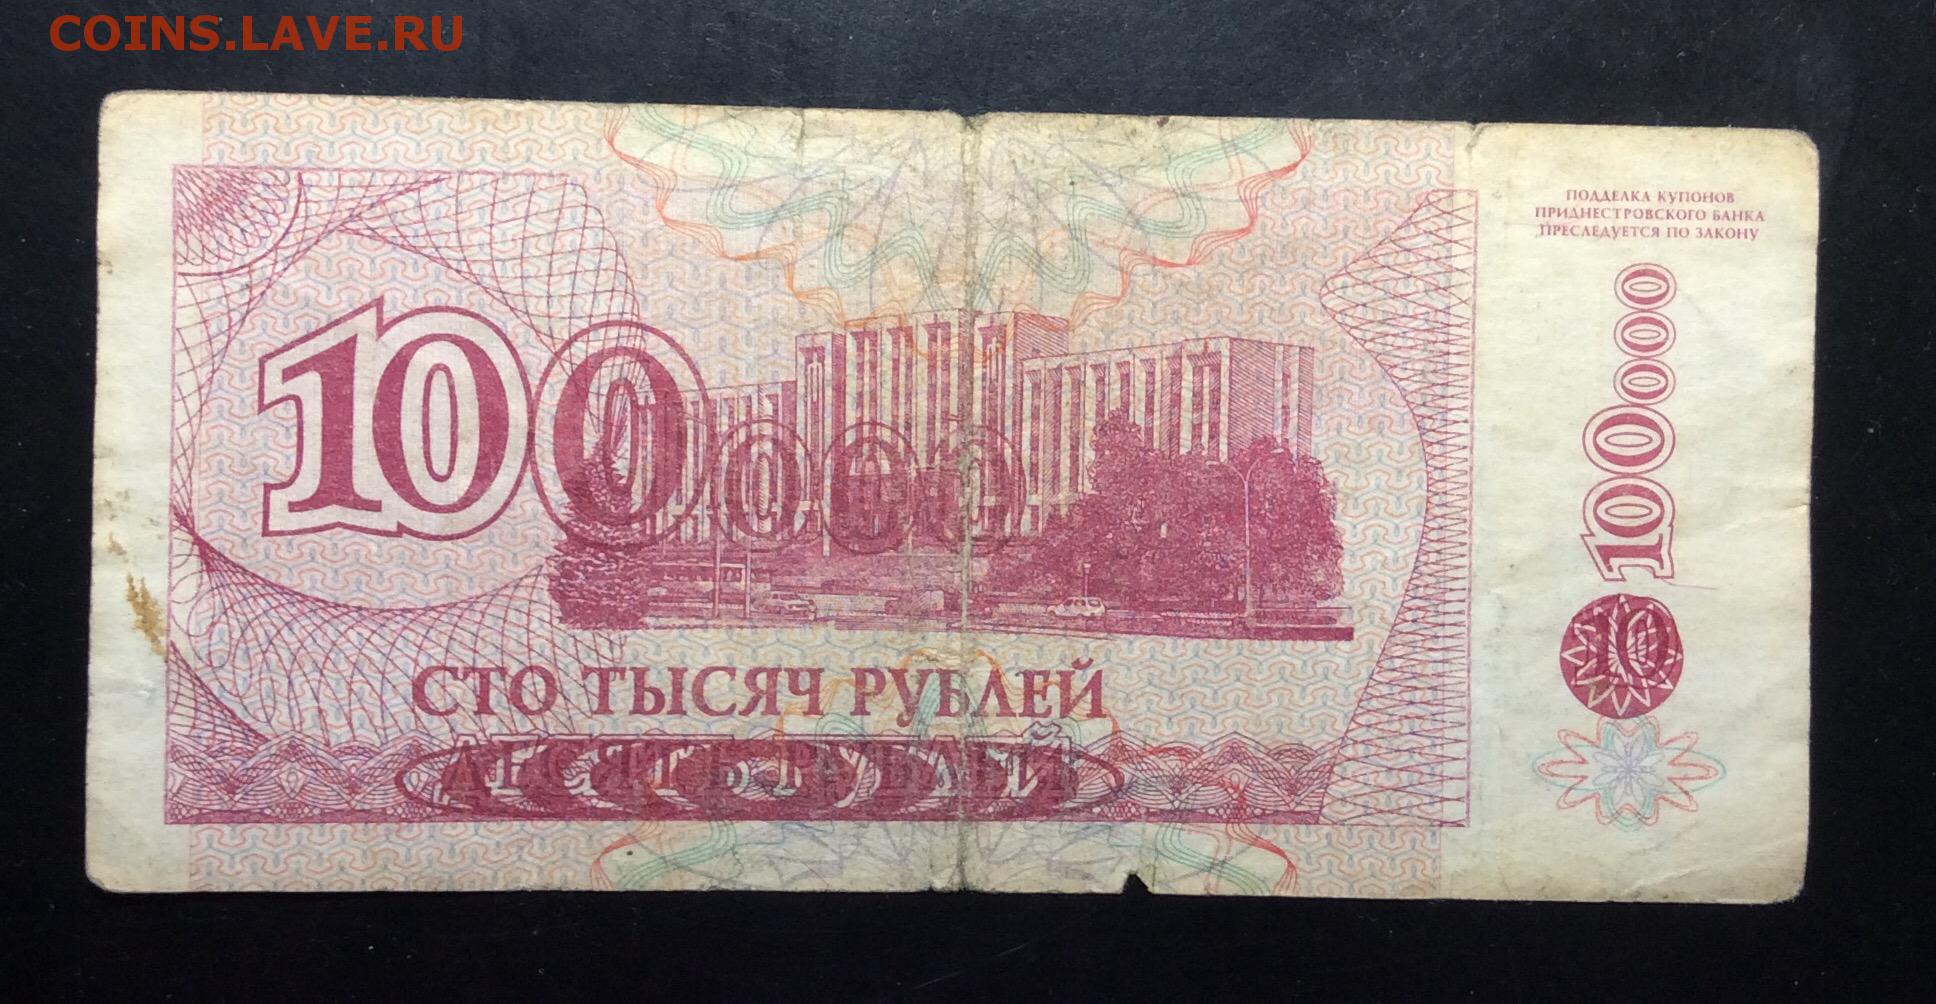 Шестьдесят три рубля. Купюра 10000 рублей. 10000 Рублей 1994 года. Банкноты 10000 рублей. 10 000 Рублей бумажные.